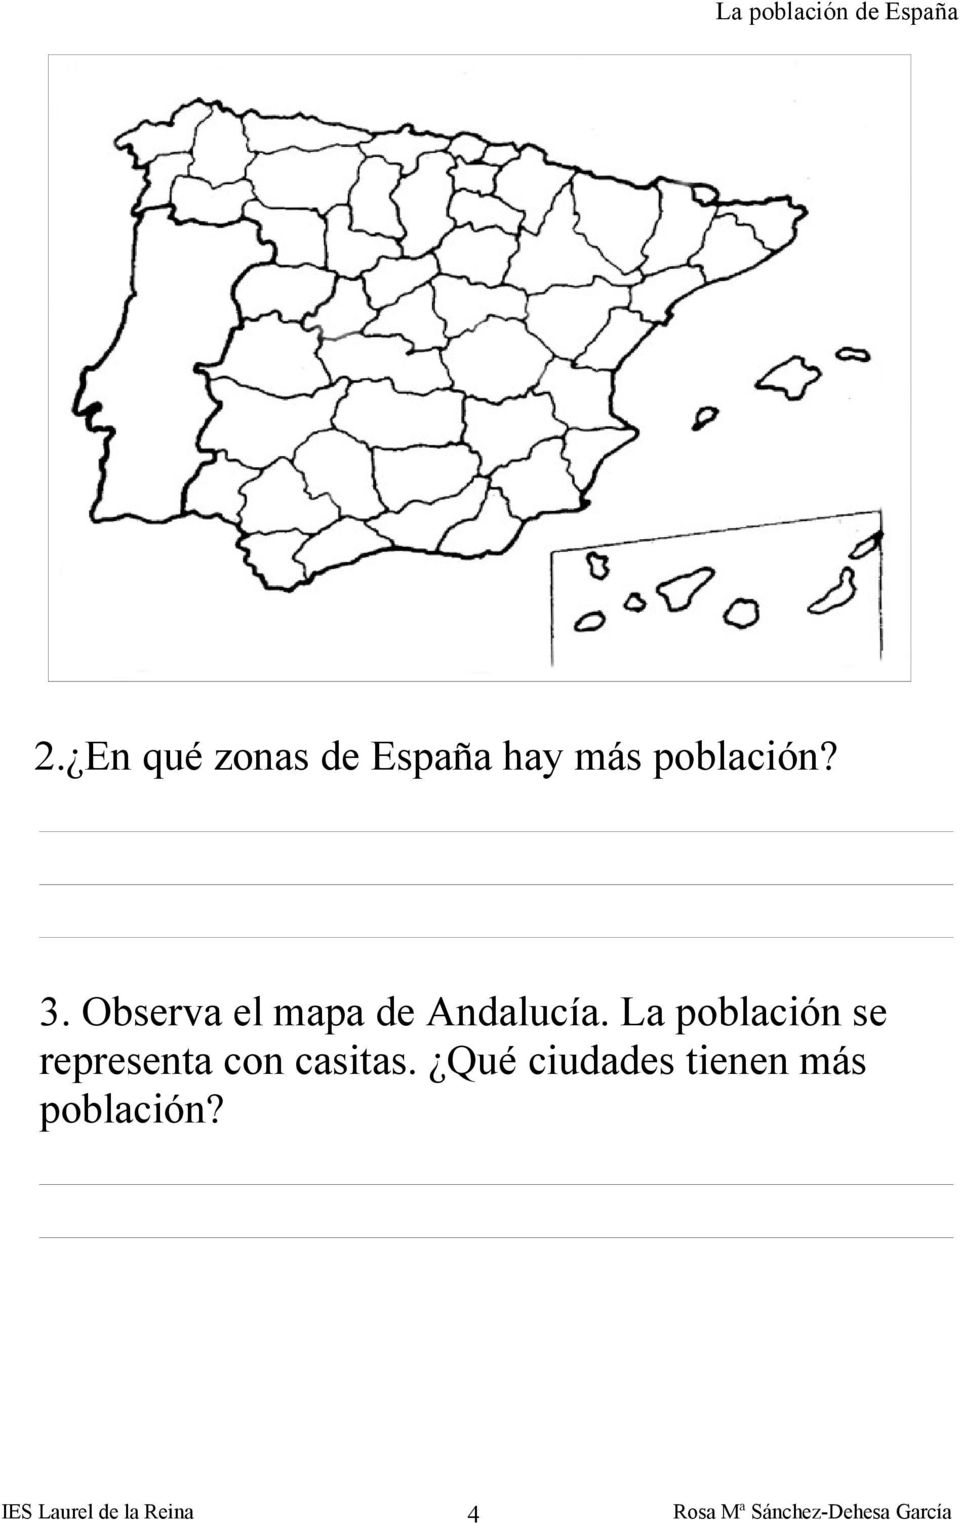 Observa el mapa de Andalucía.